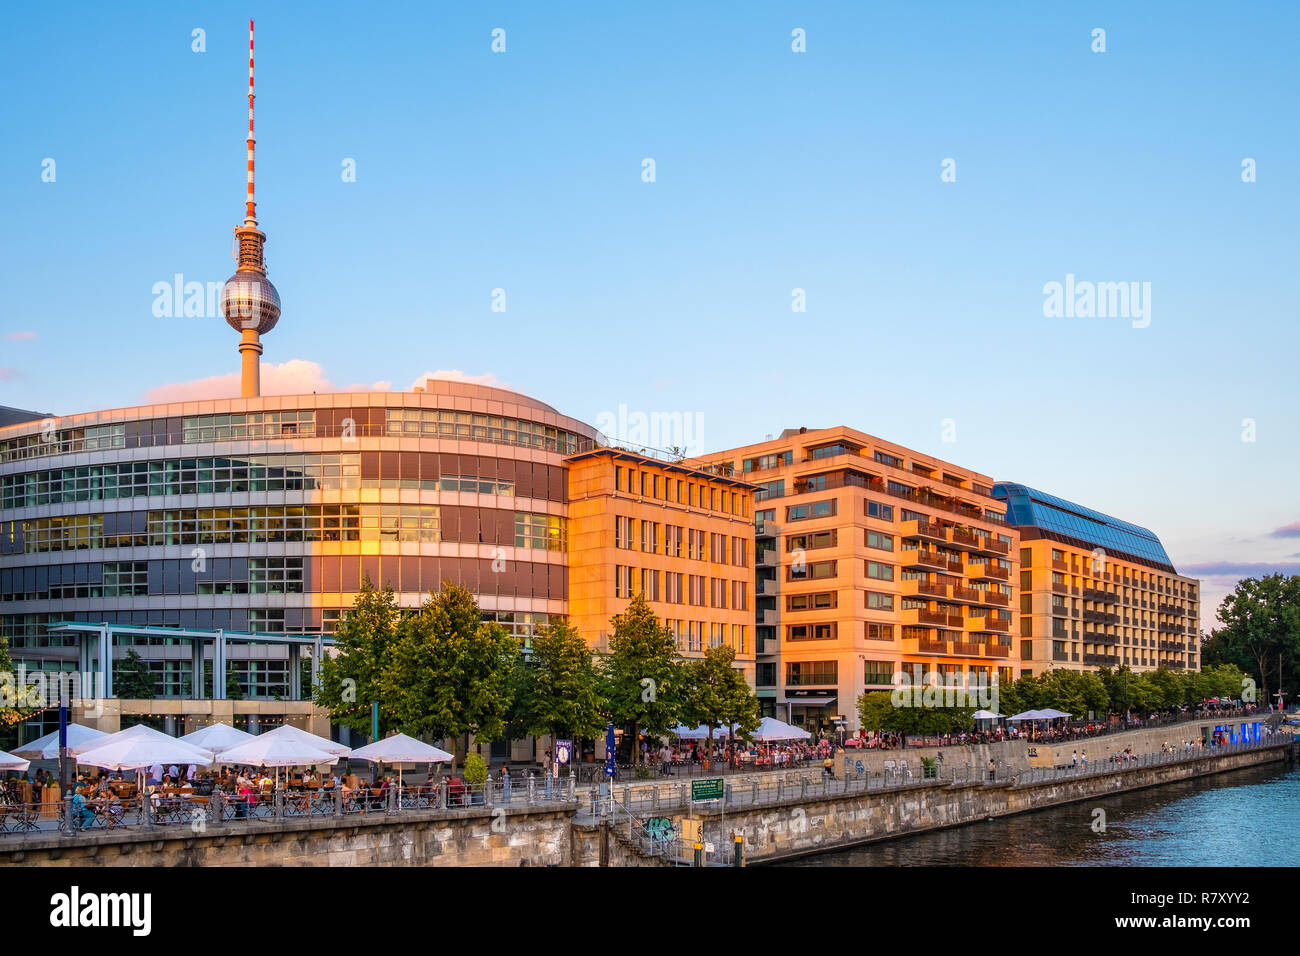 Berlin, Berlin/Deutschland - 2018/07/24: Panoramablick auf das historische Mitte Viertel von Berlin an der Spree mit Fernsehturm - Fernseh Stockfoto